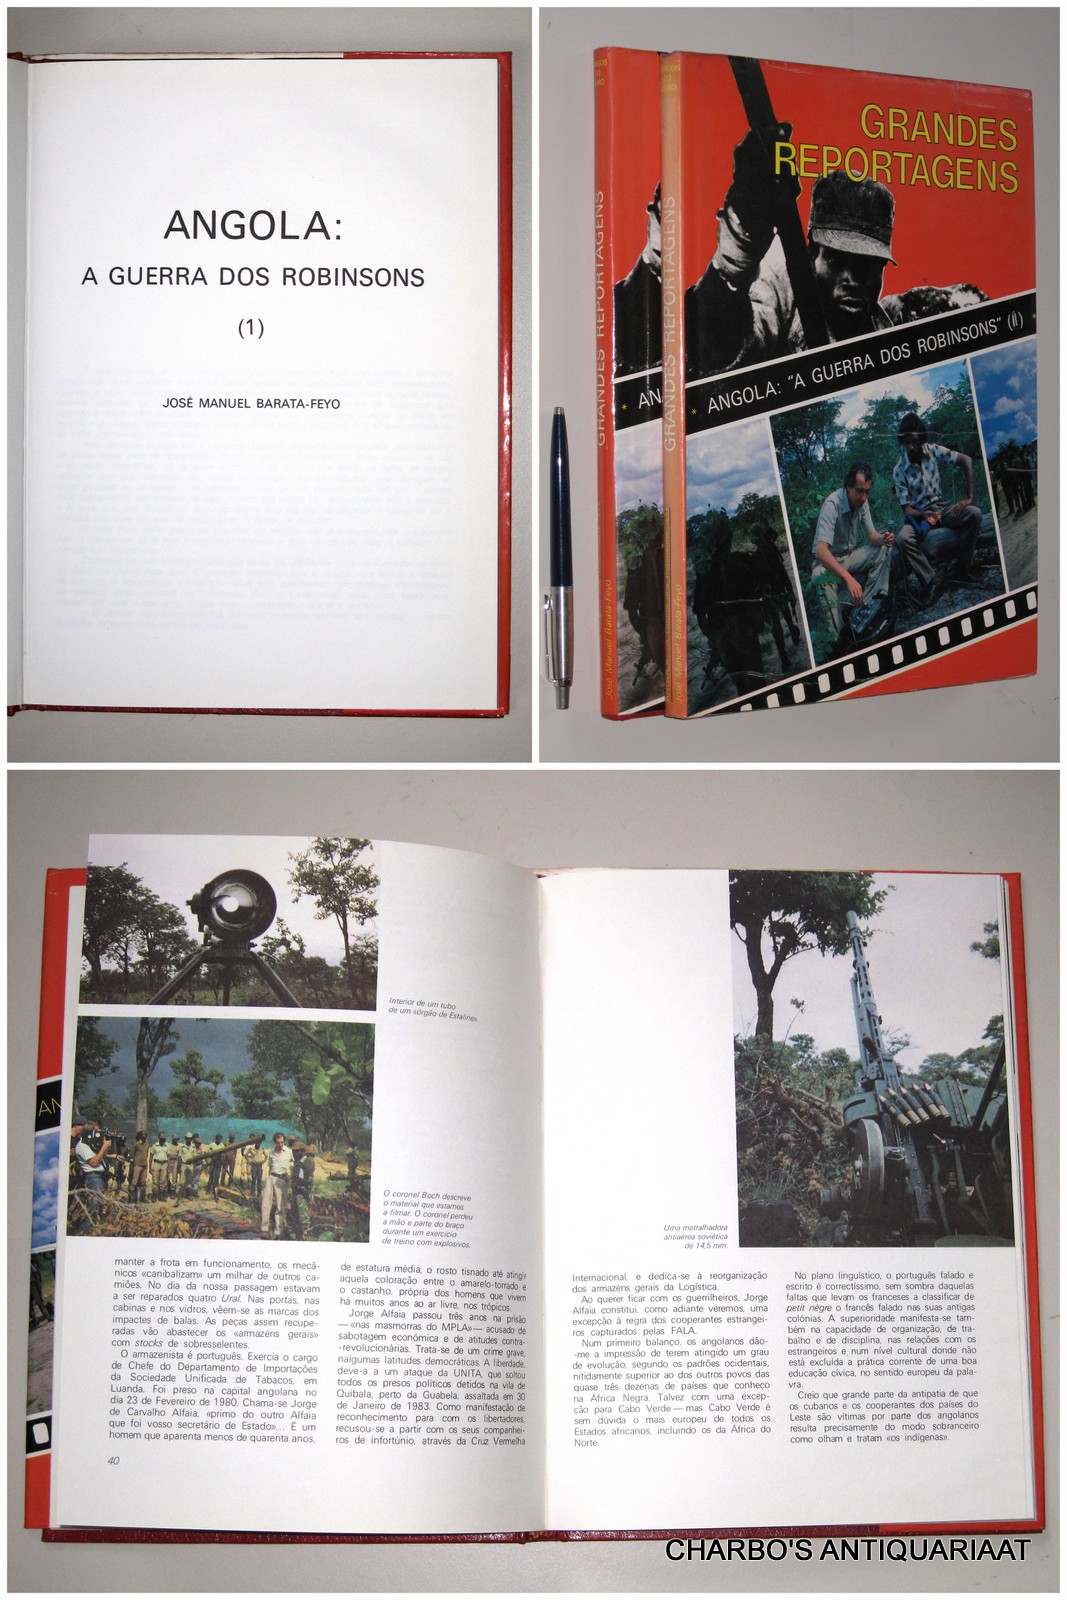 BARATA-FEYO, JOSE MANUEL, -  Grandes reportagens. Angola: a guerra dos Robinsons. (2 vol. set).